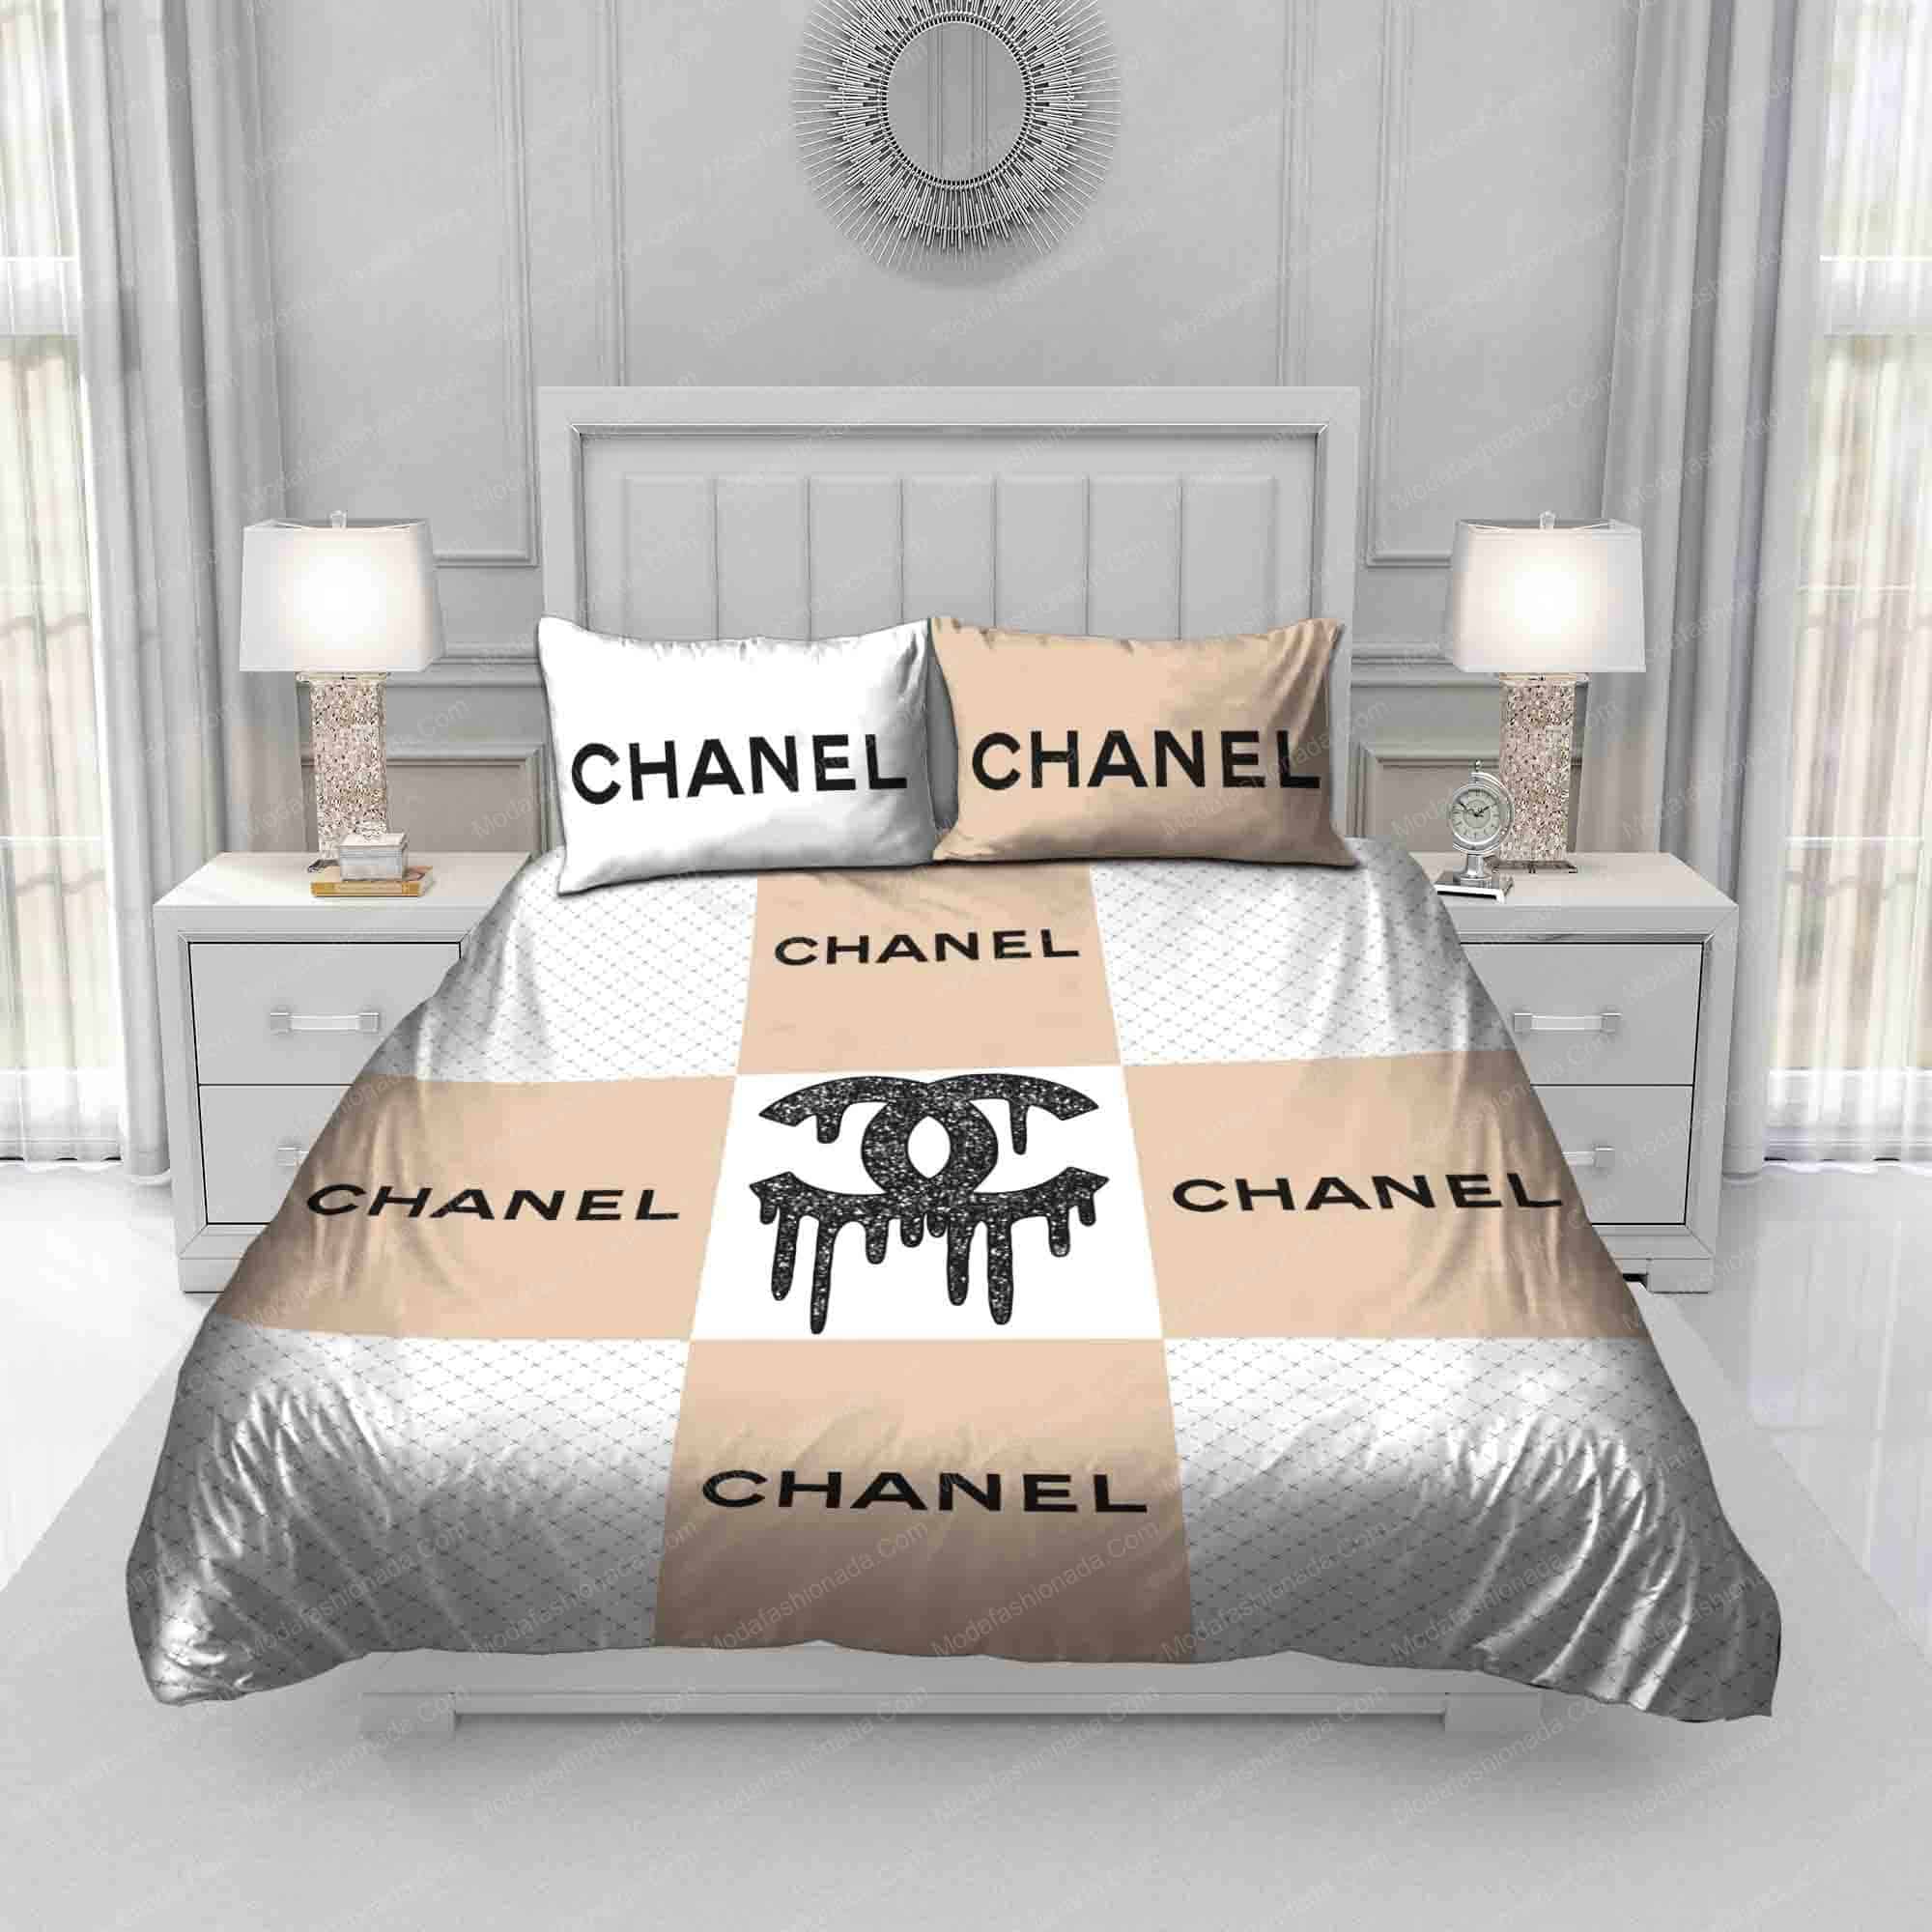 Tổng hợp hơn 53 về chanel bedroom set mới nhất  cdgdbentreeduvn